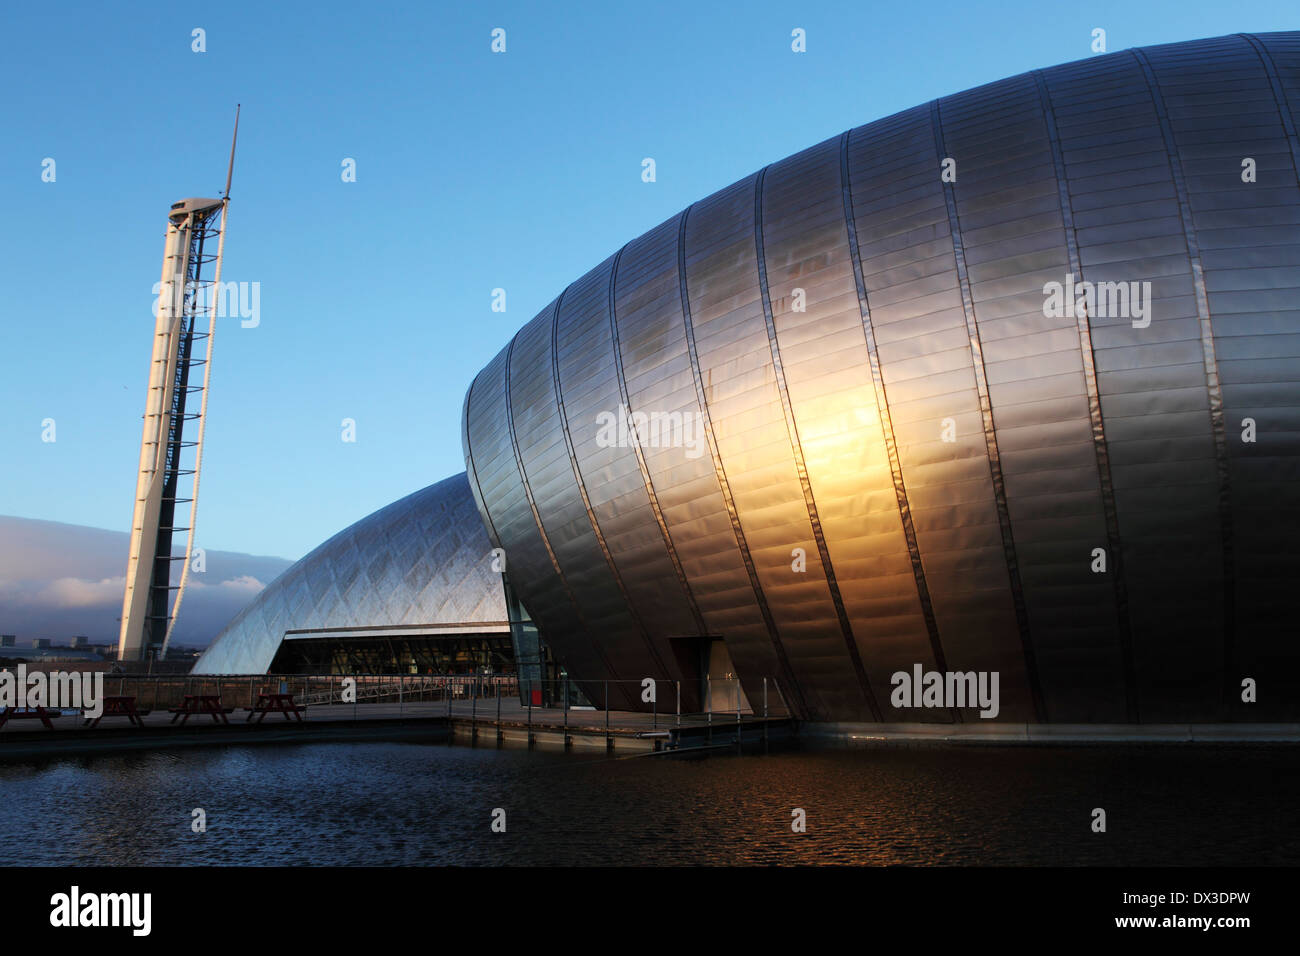 La façade métallique du Glasgow Science Centre de Glasgow, en Écosse. Banque D'Images